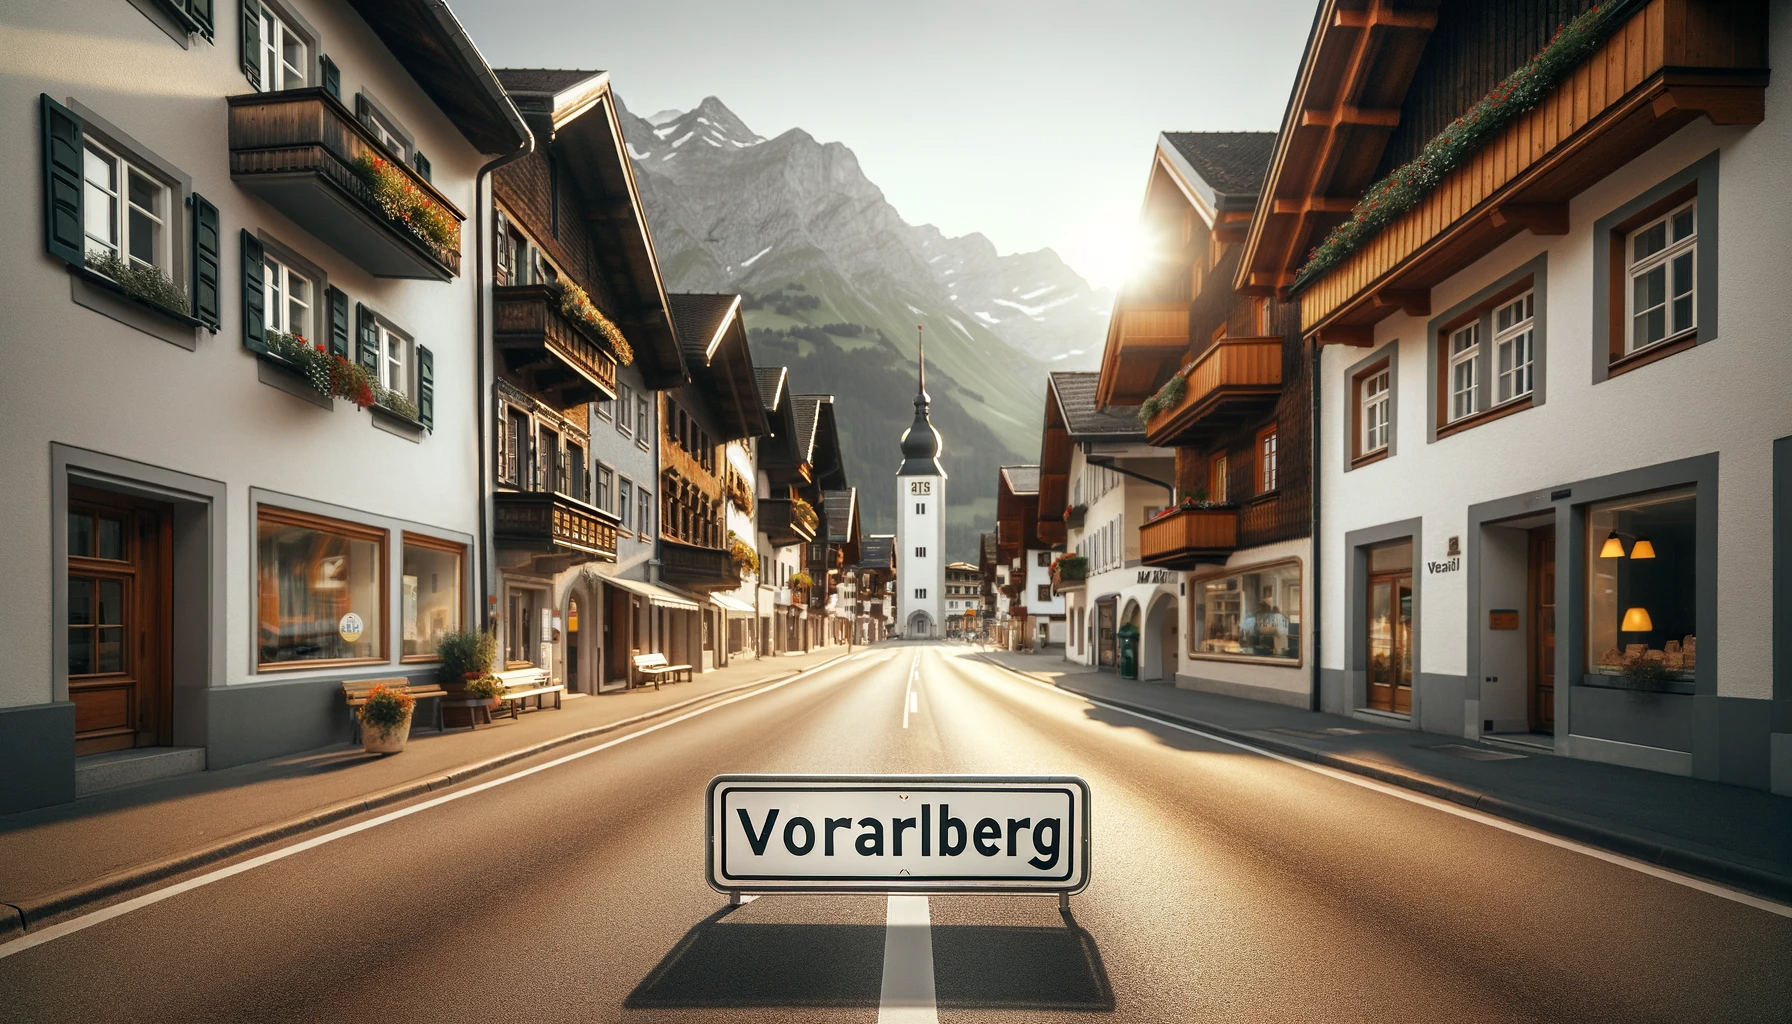 Webdesign Agentur Vorarlberg – Ihre Eintrittskarte zur regionalen Sichtbarkeit und Erfolg 